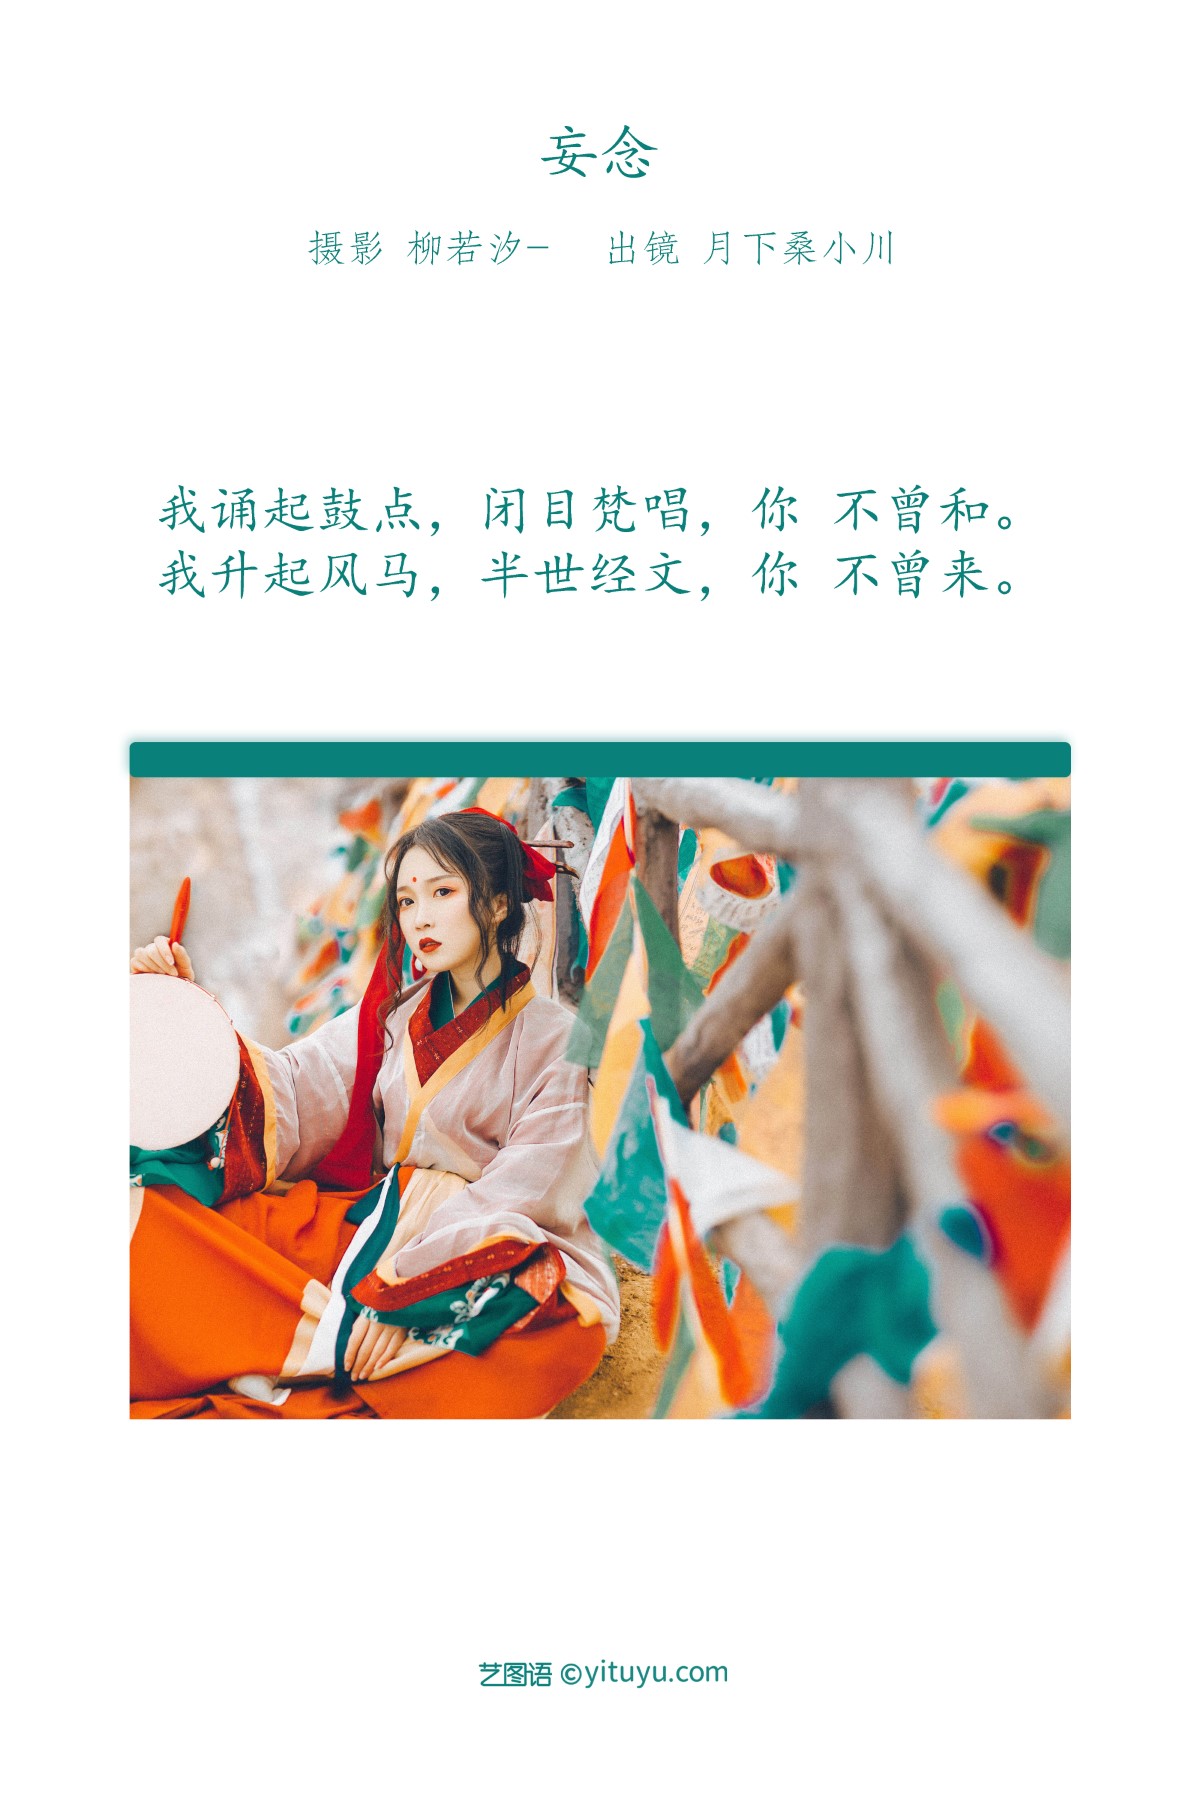 YiTuYu艺图语 Vol 1802 Yue Xia Sang Xiao Chuan 0001 5918870493.jpg